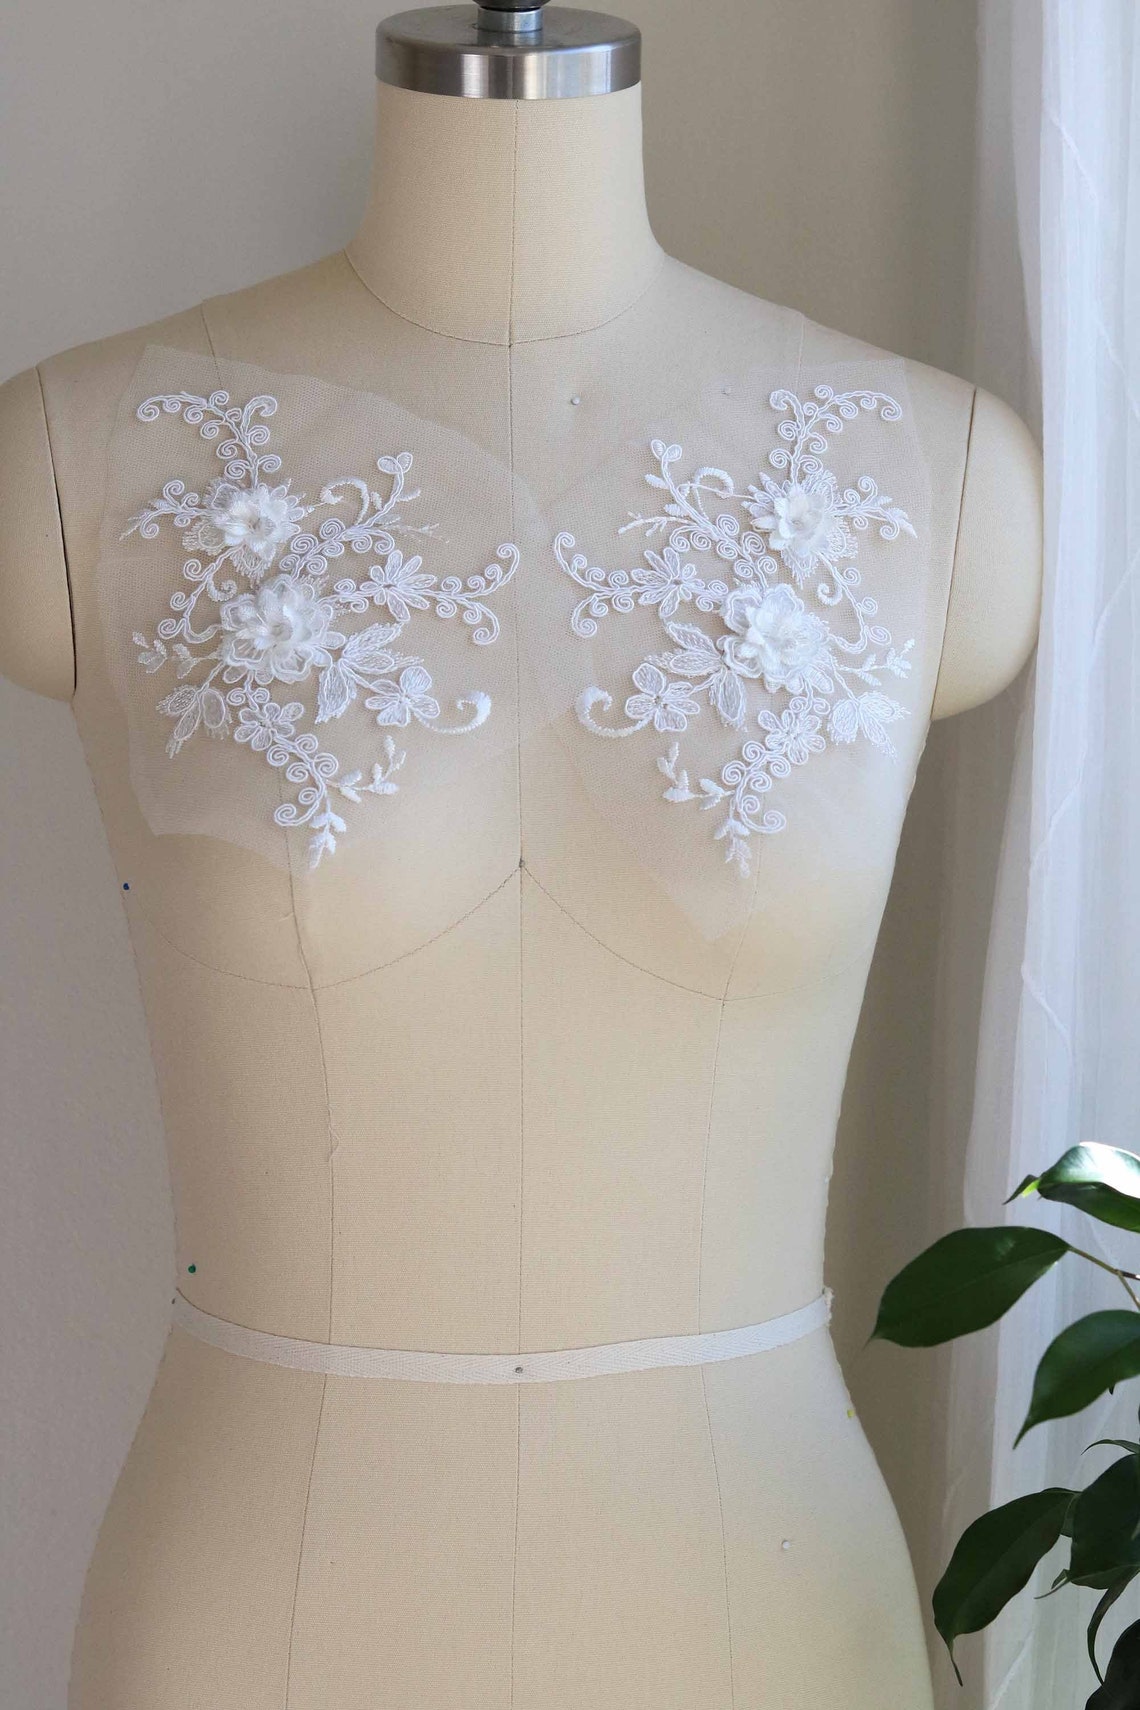 2075 off White Lace Applique 3D Lace Applique Wedding Dress | Etsy